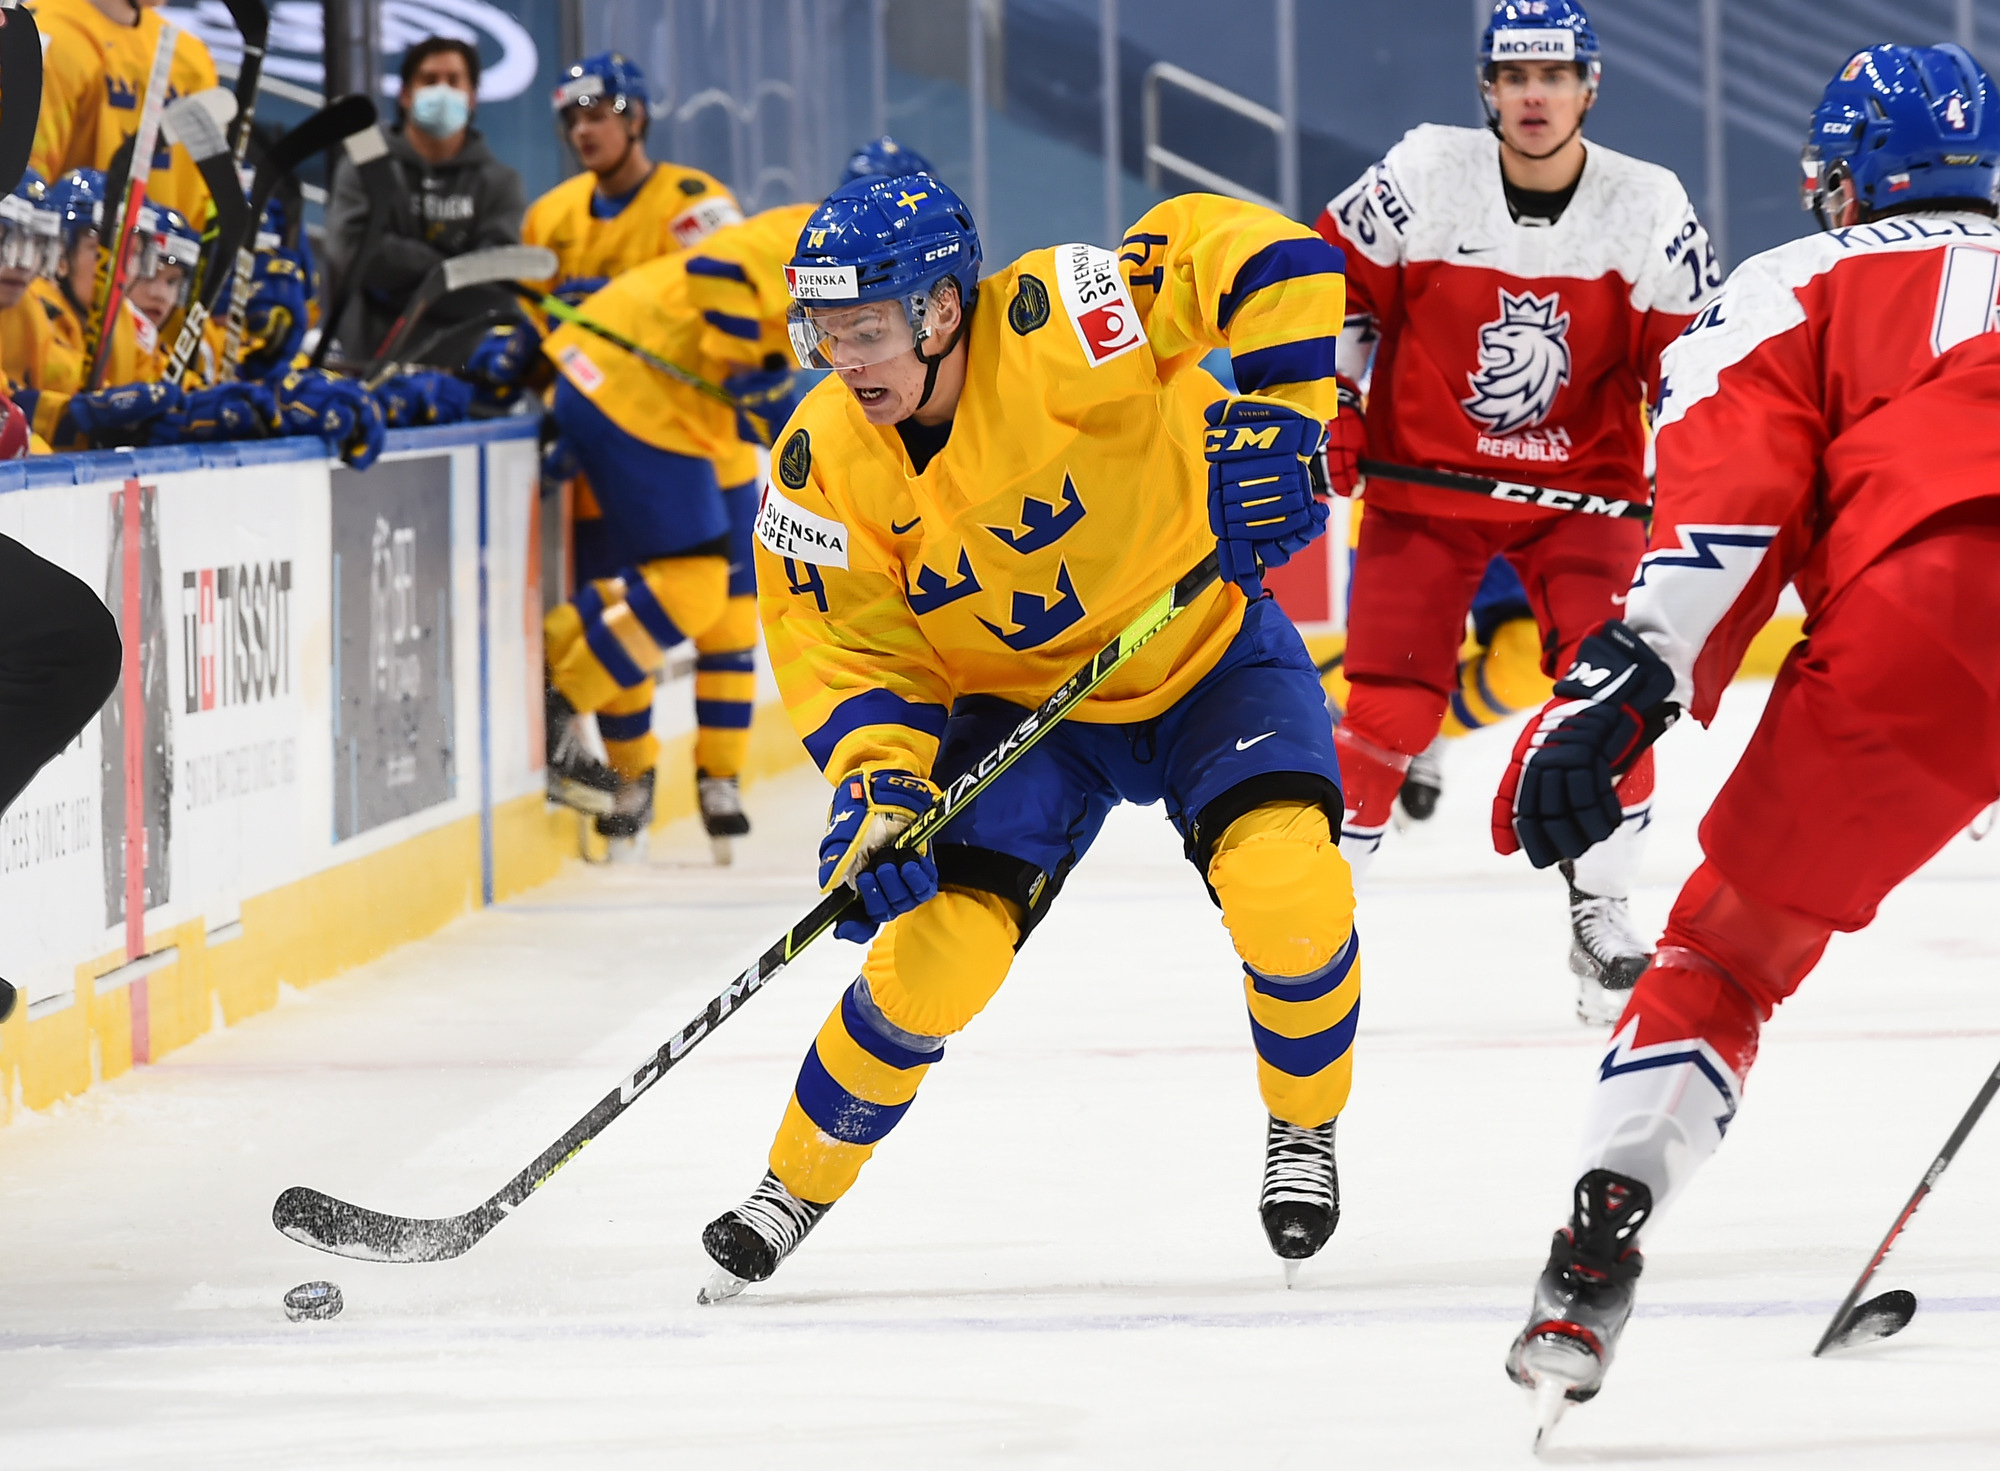 IIHF Sweden extends prelims streak